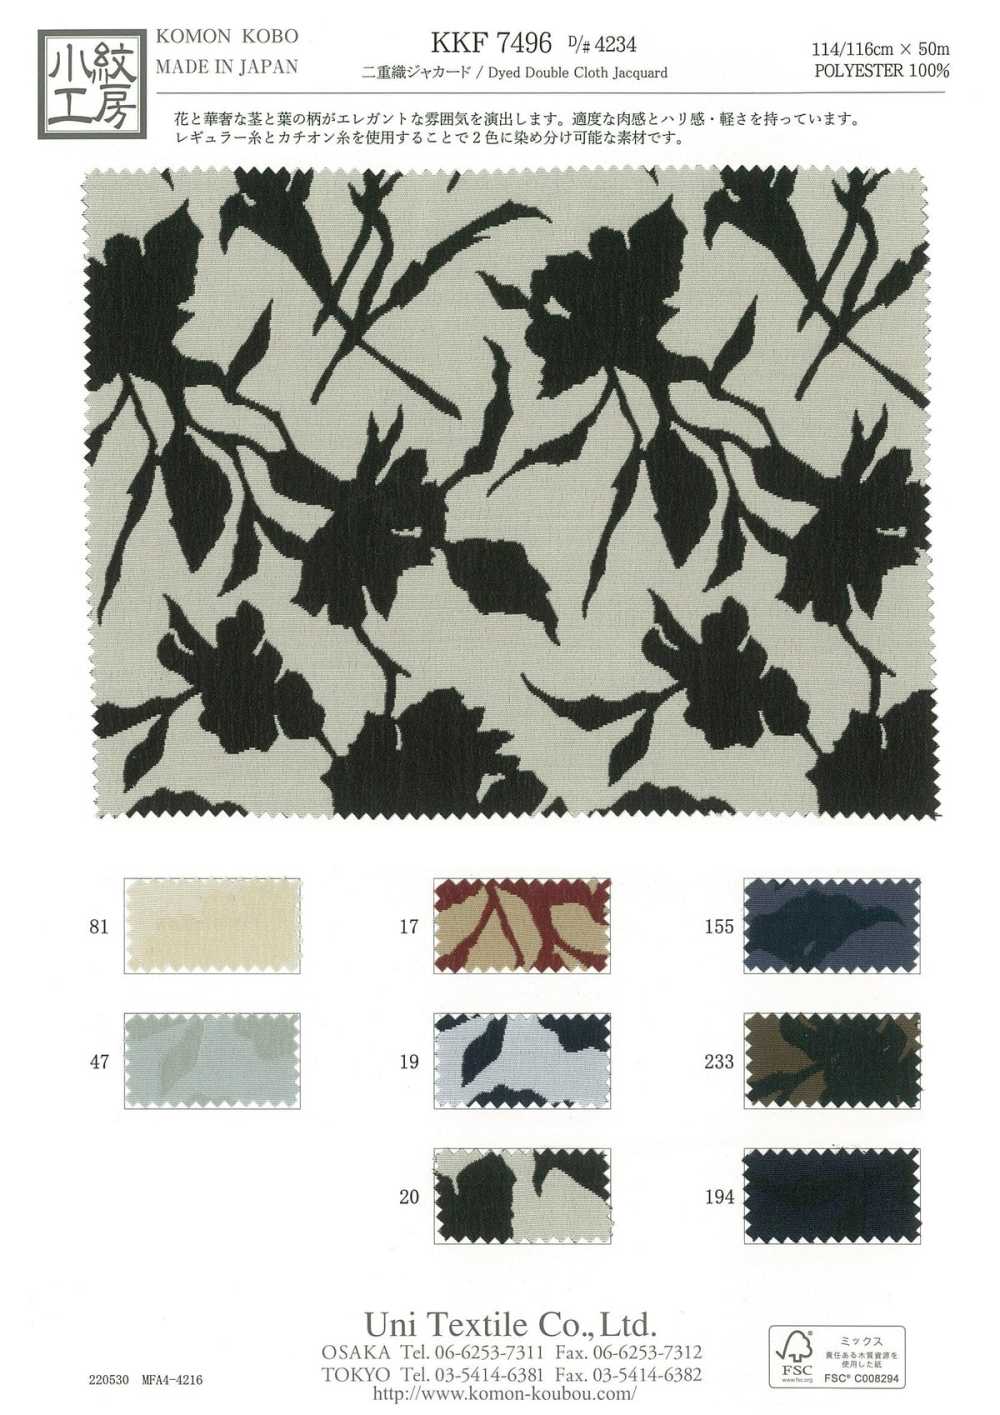 KKF7496-D-4234 Doppelt Gewebter Jacquard-Blumendruck[Textilgewebe] Uni Textile